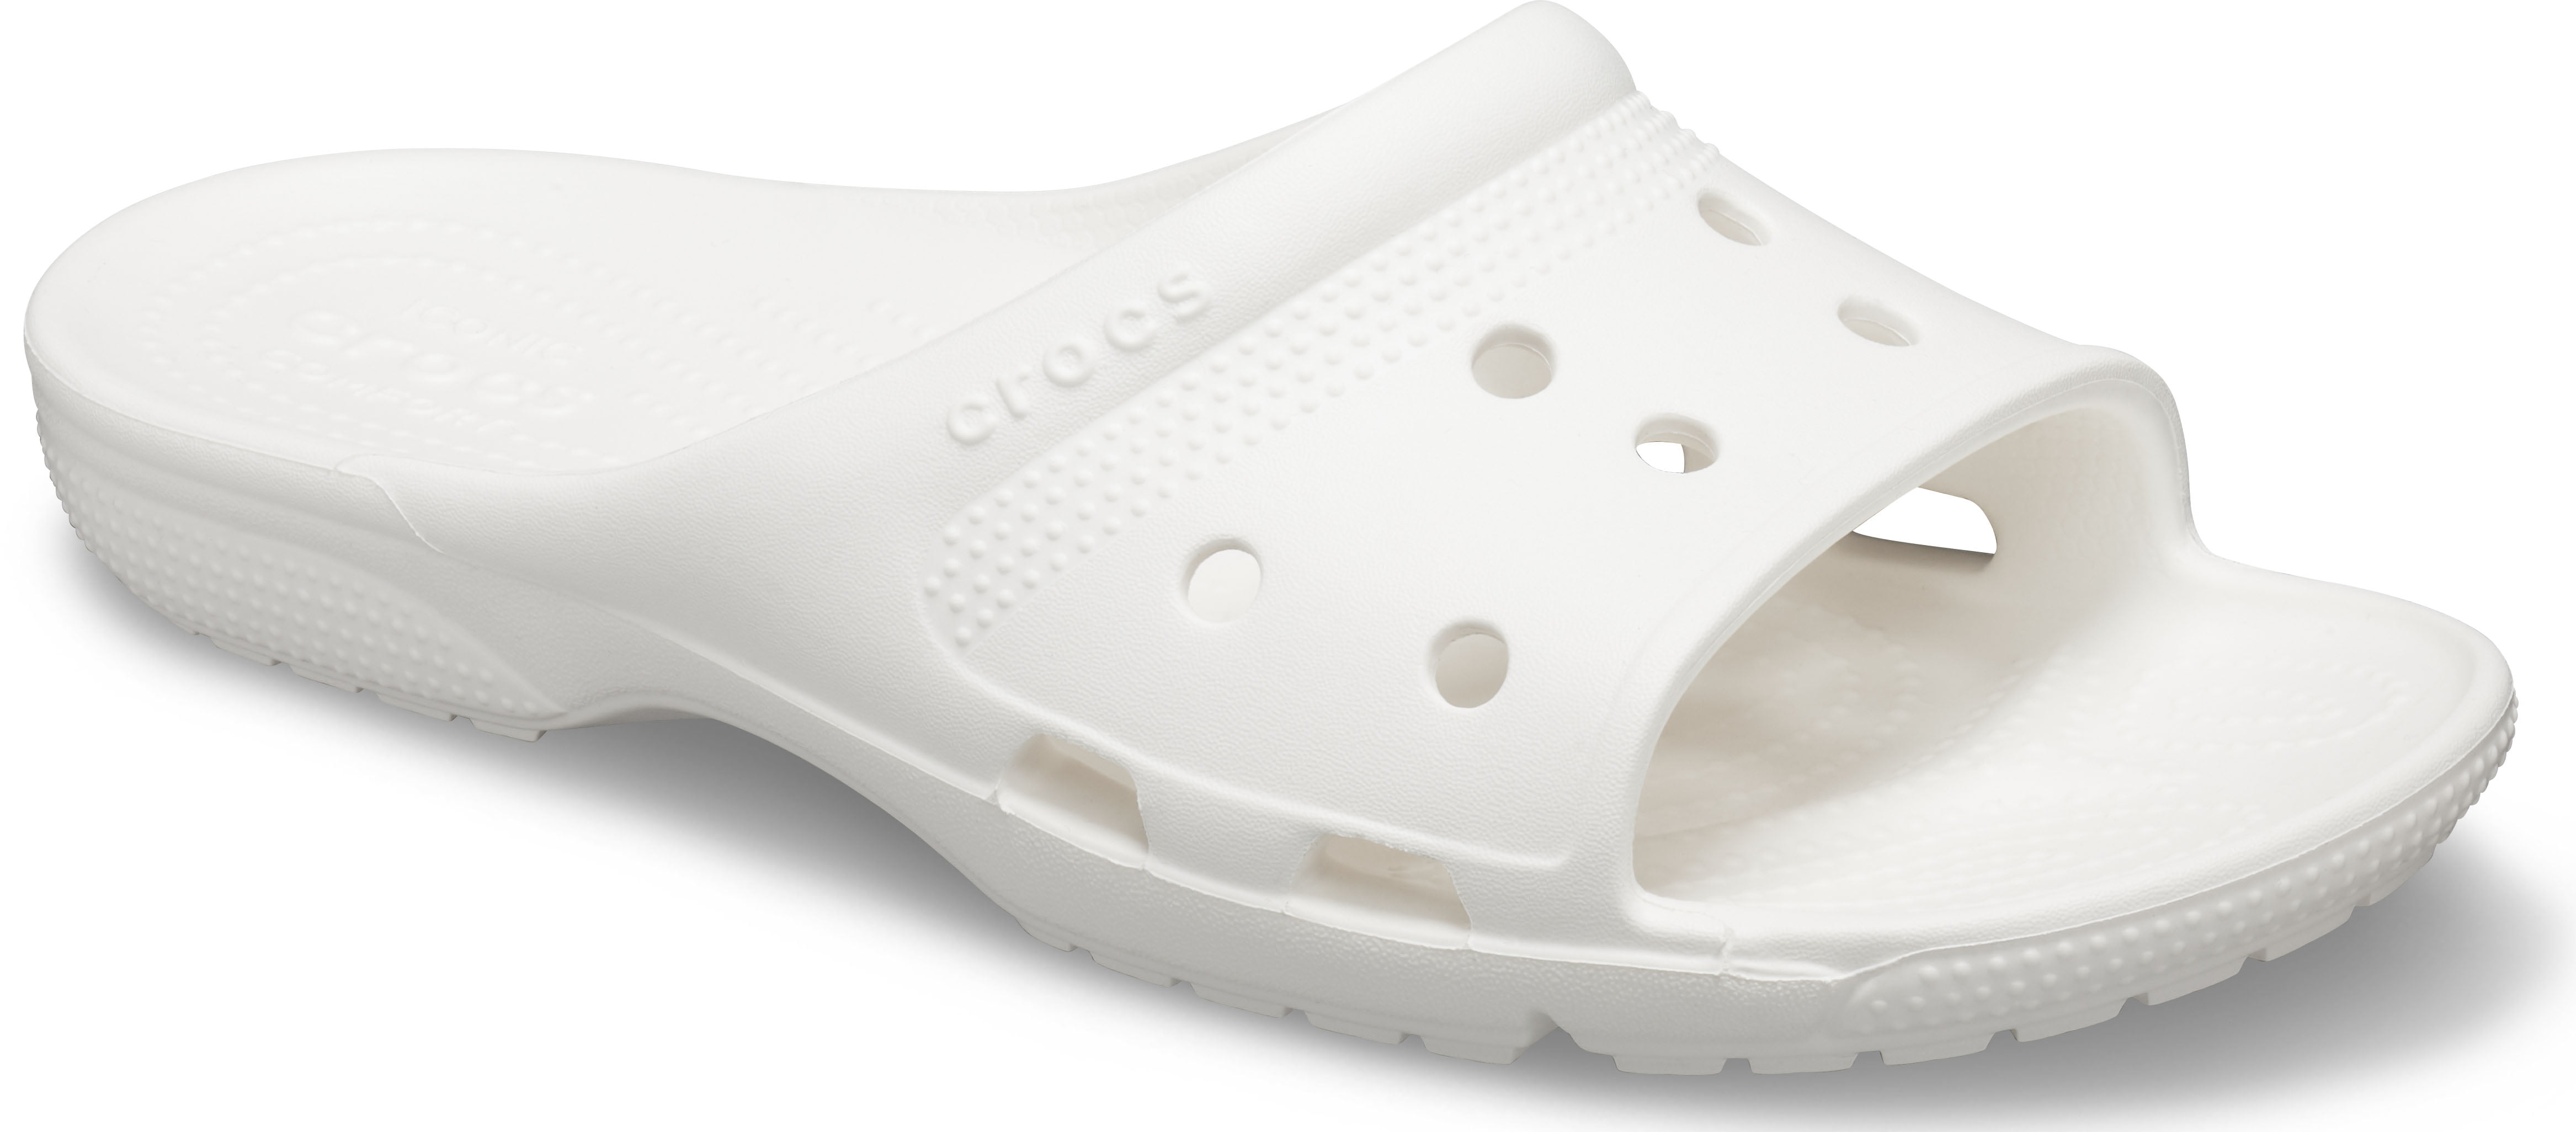 crocs coast slide sandal